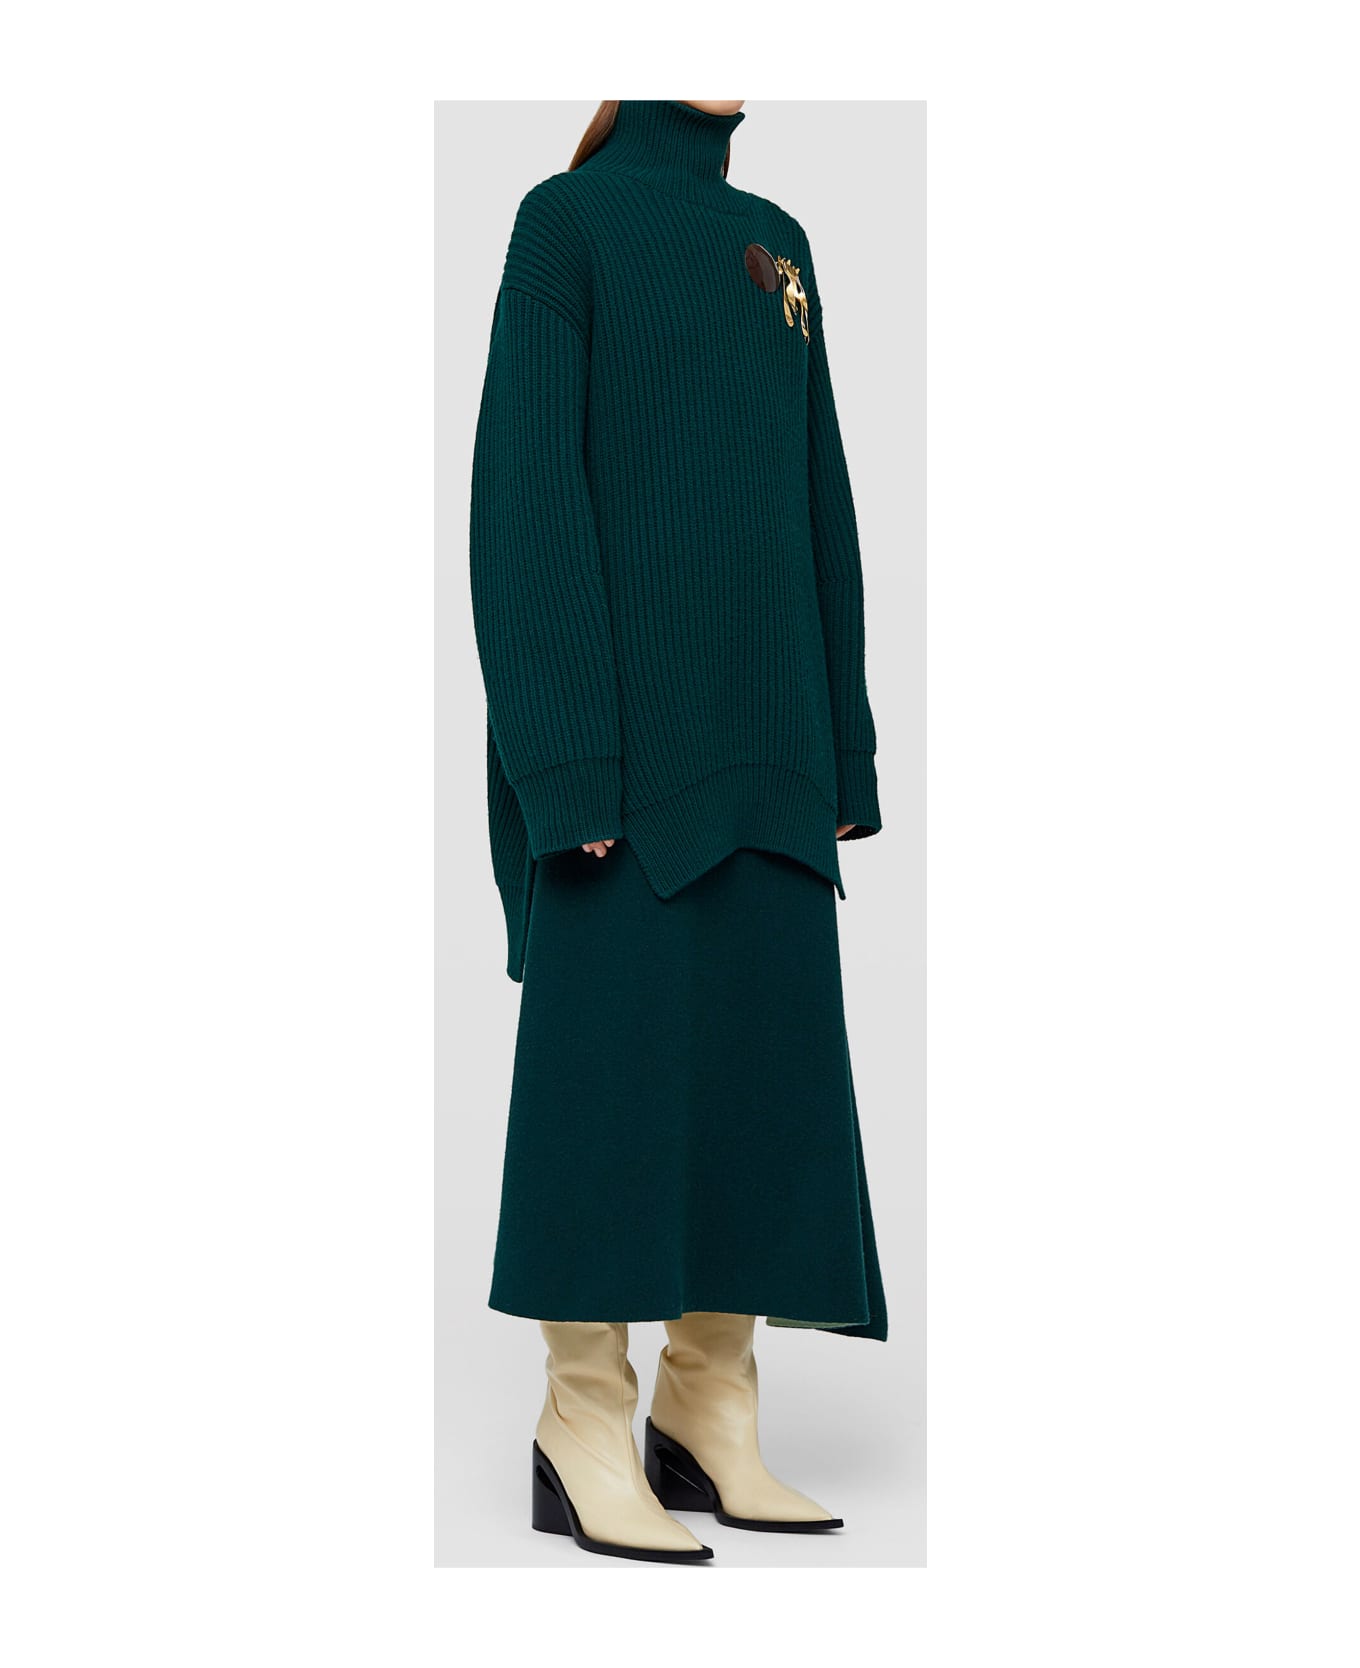 Jil Sander Asymmetrical Green Skirt - GREEN スカート